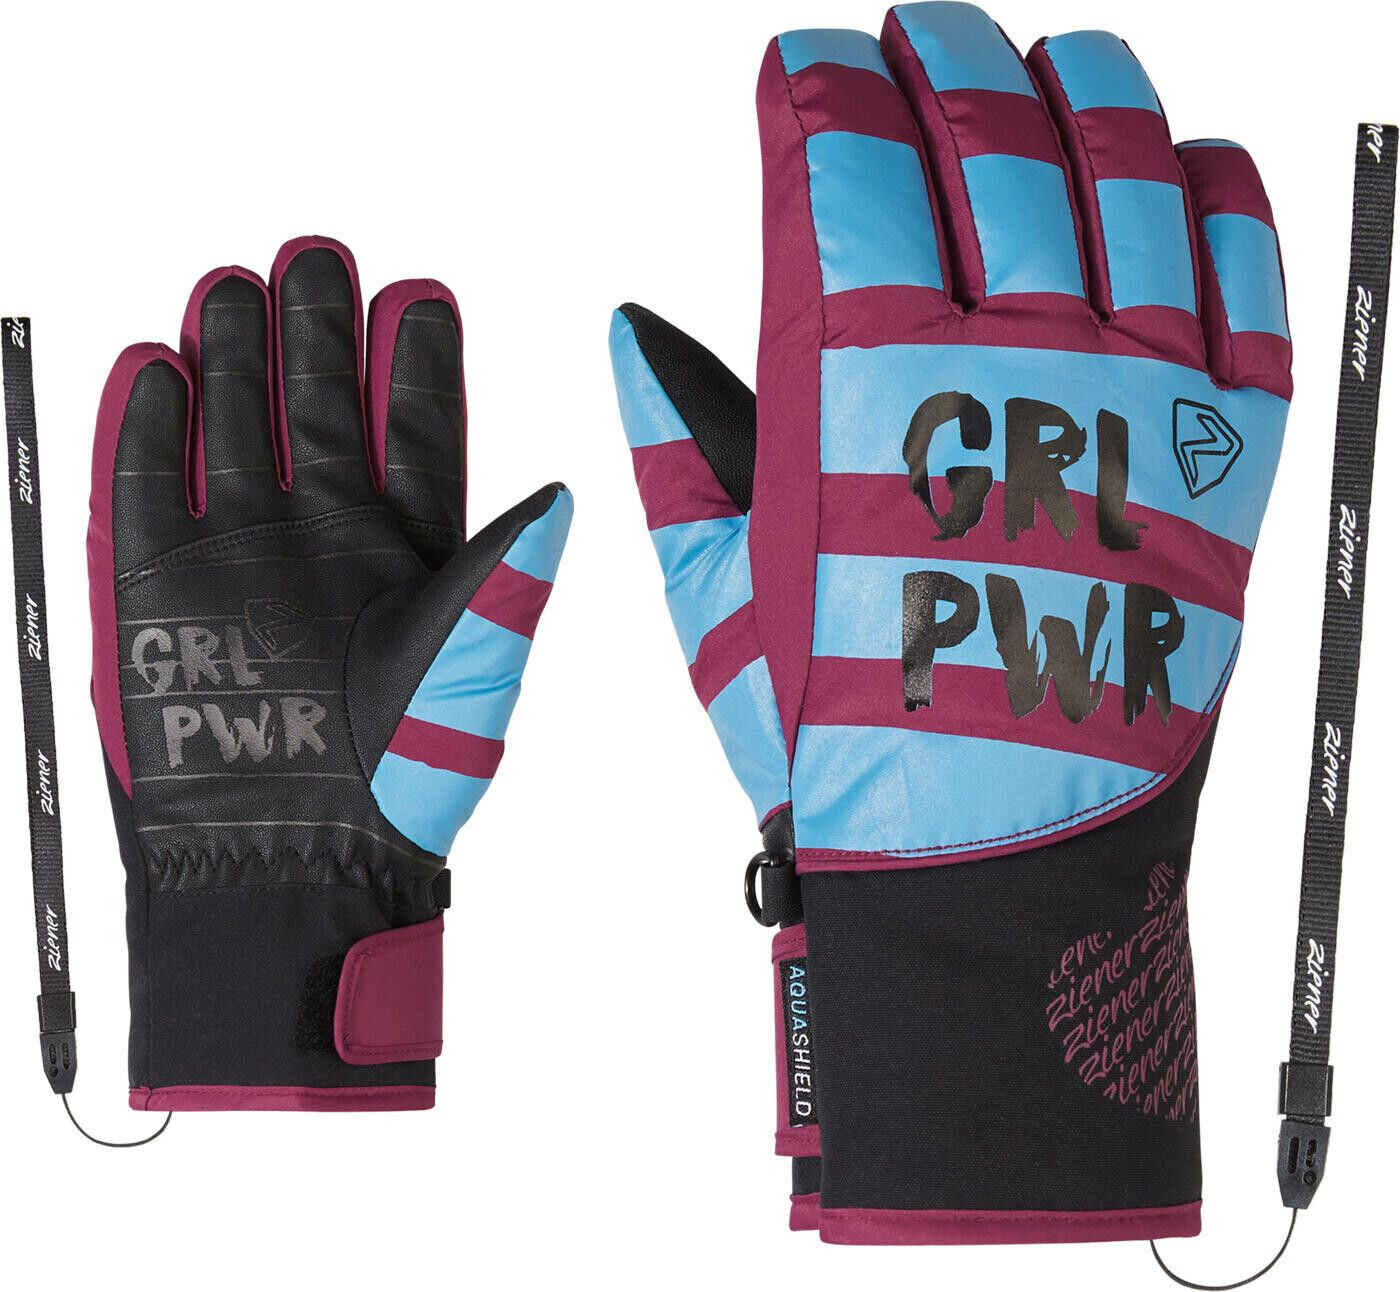 Ziener Liwa ASR PR Girls Glove Junior ab 21,12 € | Preisvergleich bei